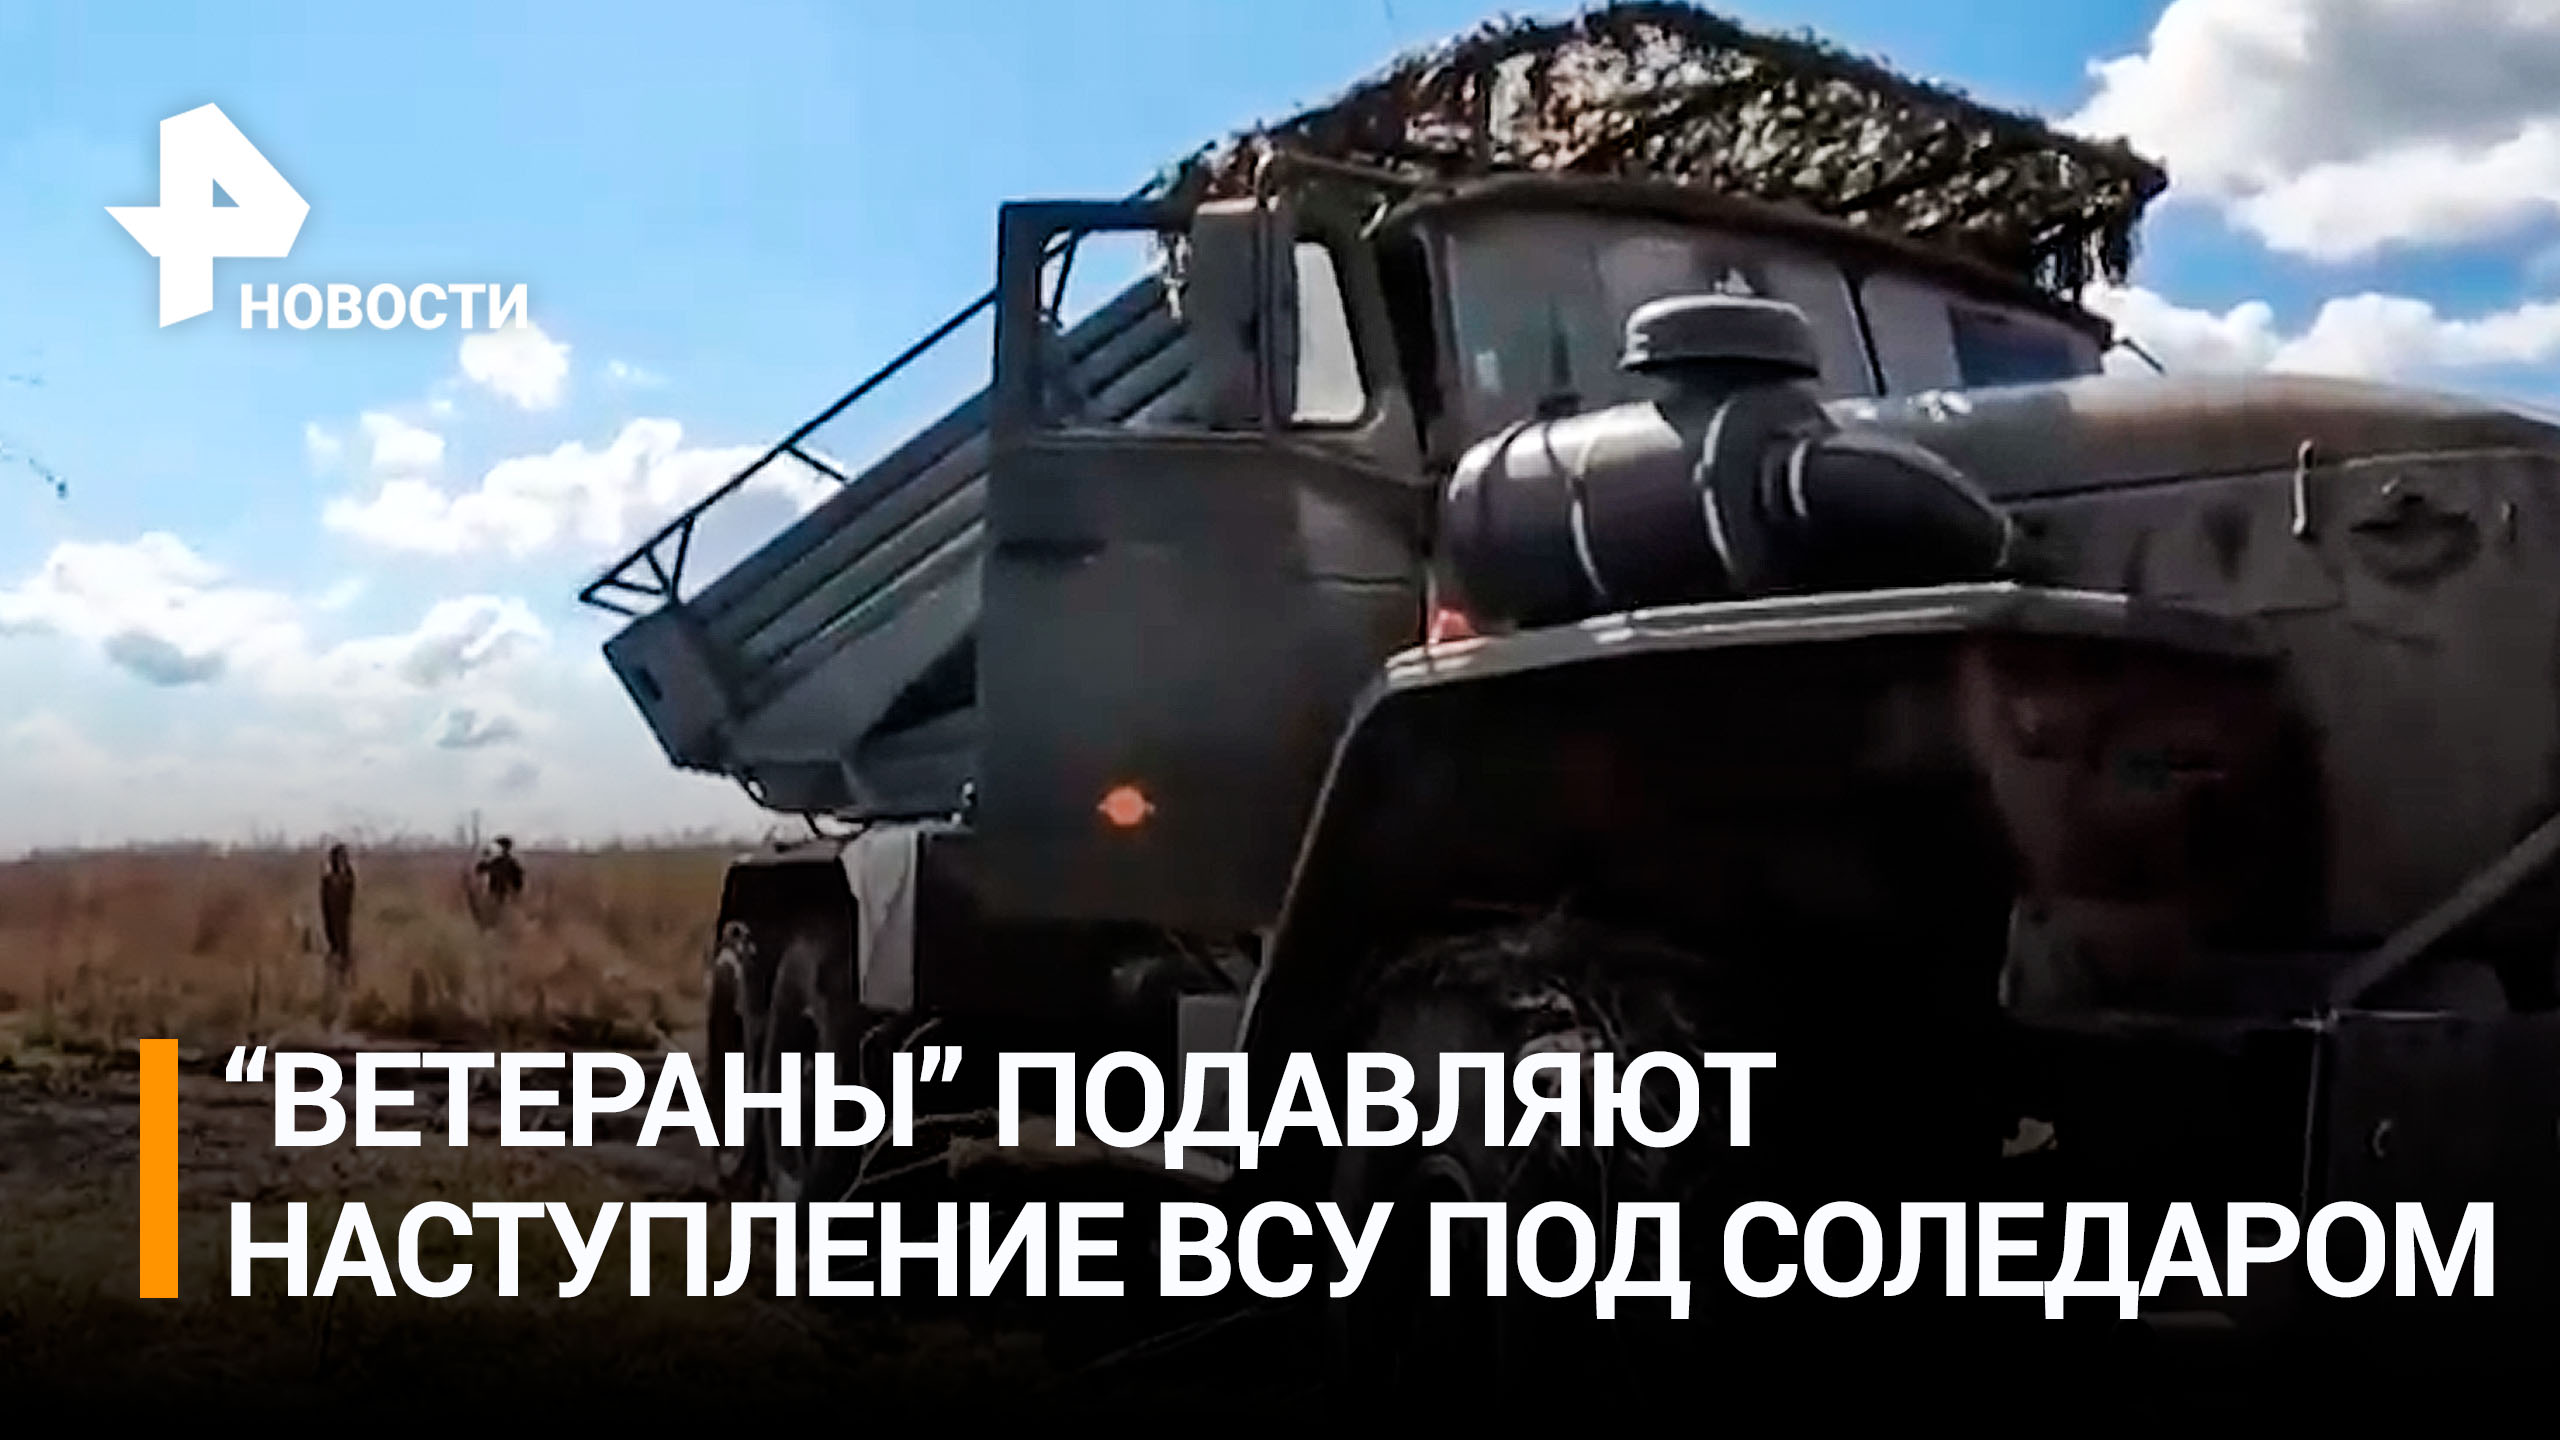 Бойцы подразделения «Ветераны» подавляют наступление ВСУ под Соледаром / РЕН Новости